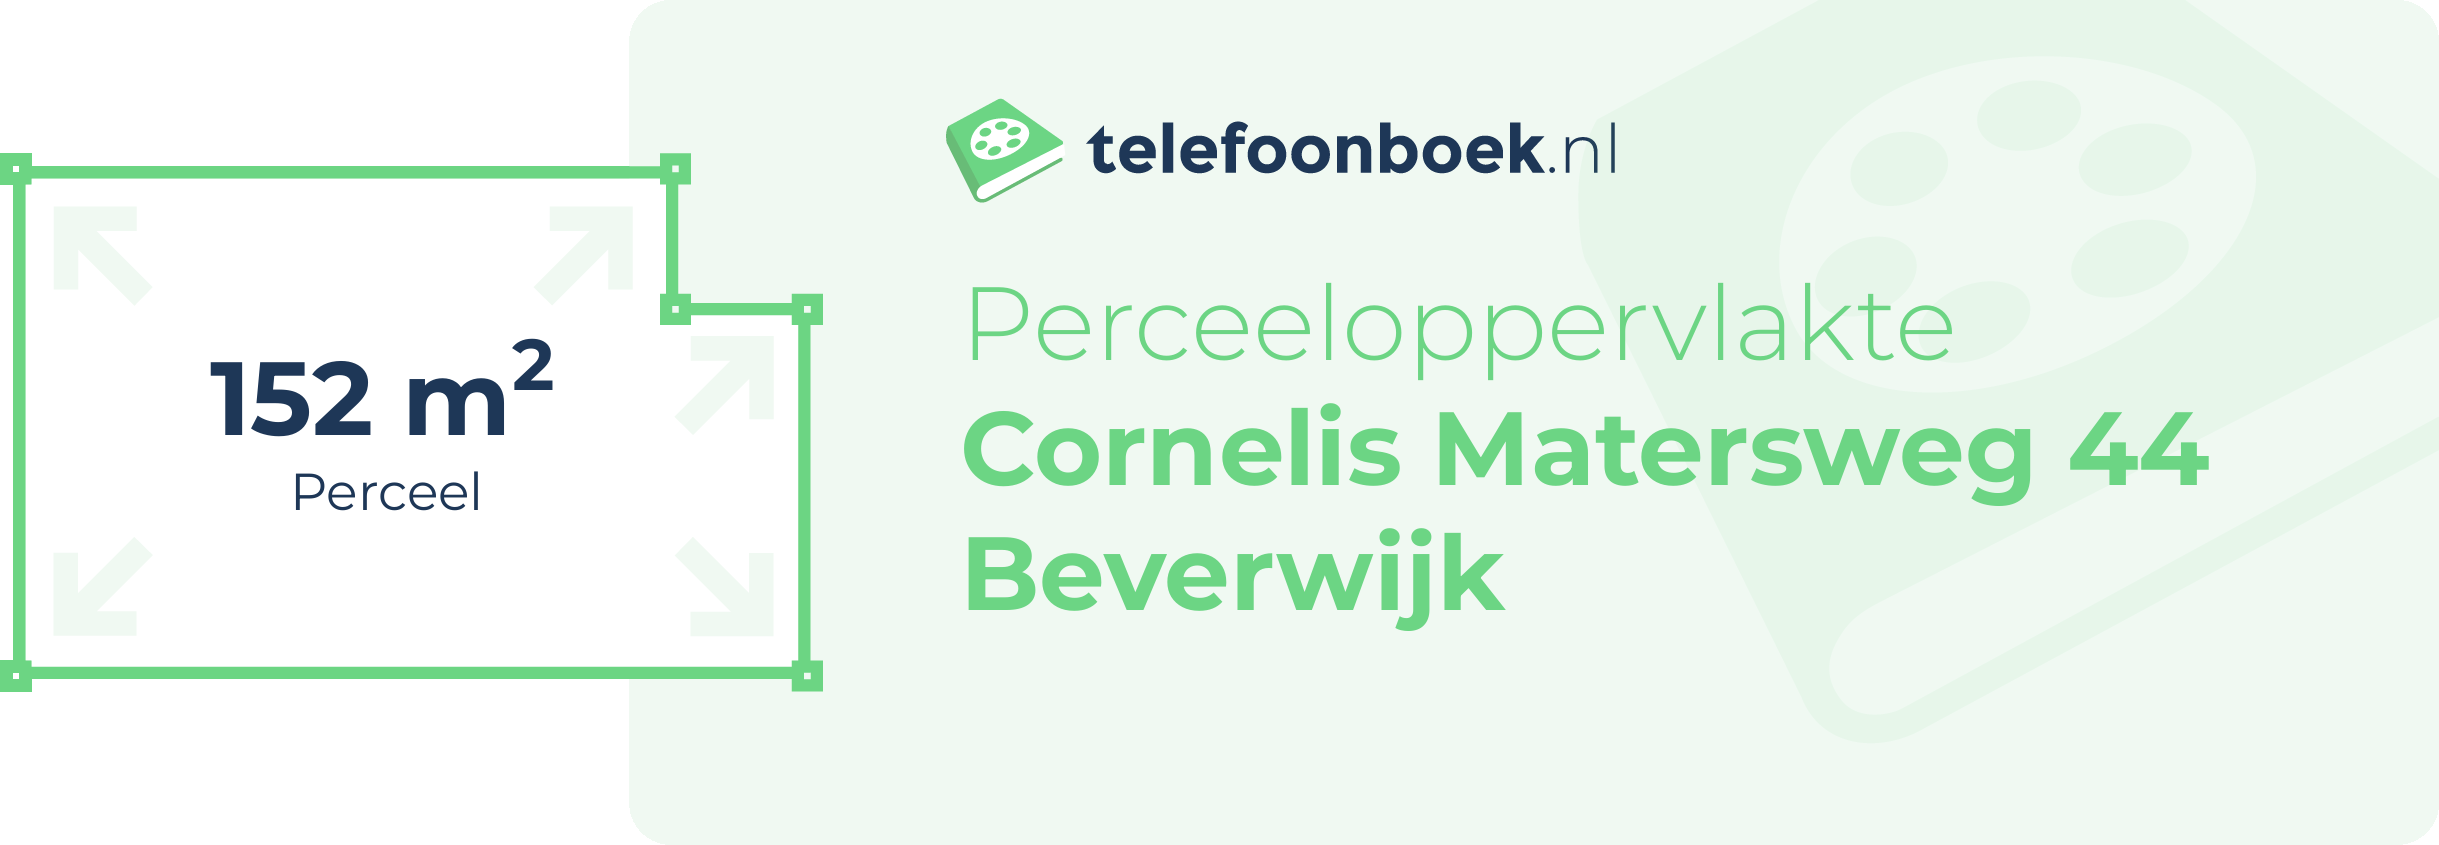 Perceeloppervlakte Cornelis Matersweg 44 Beverwijk